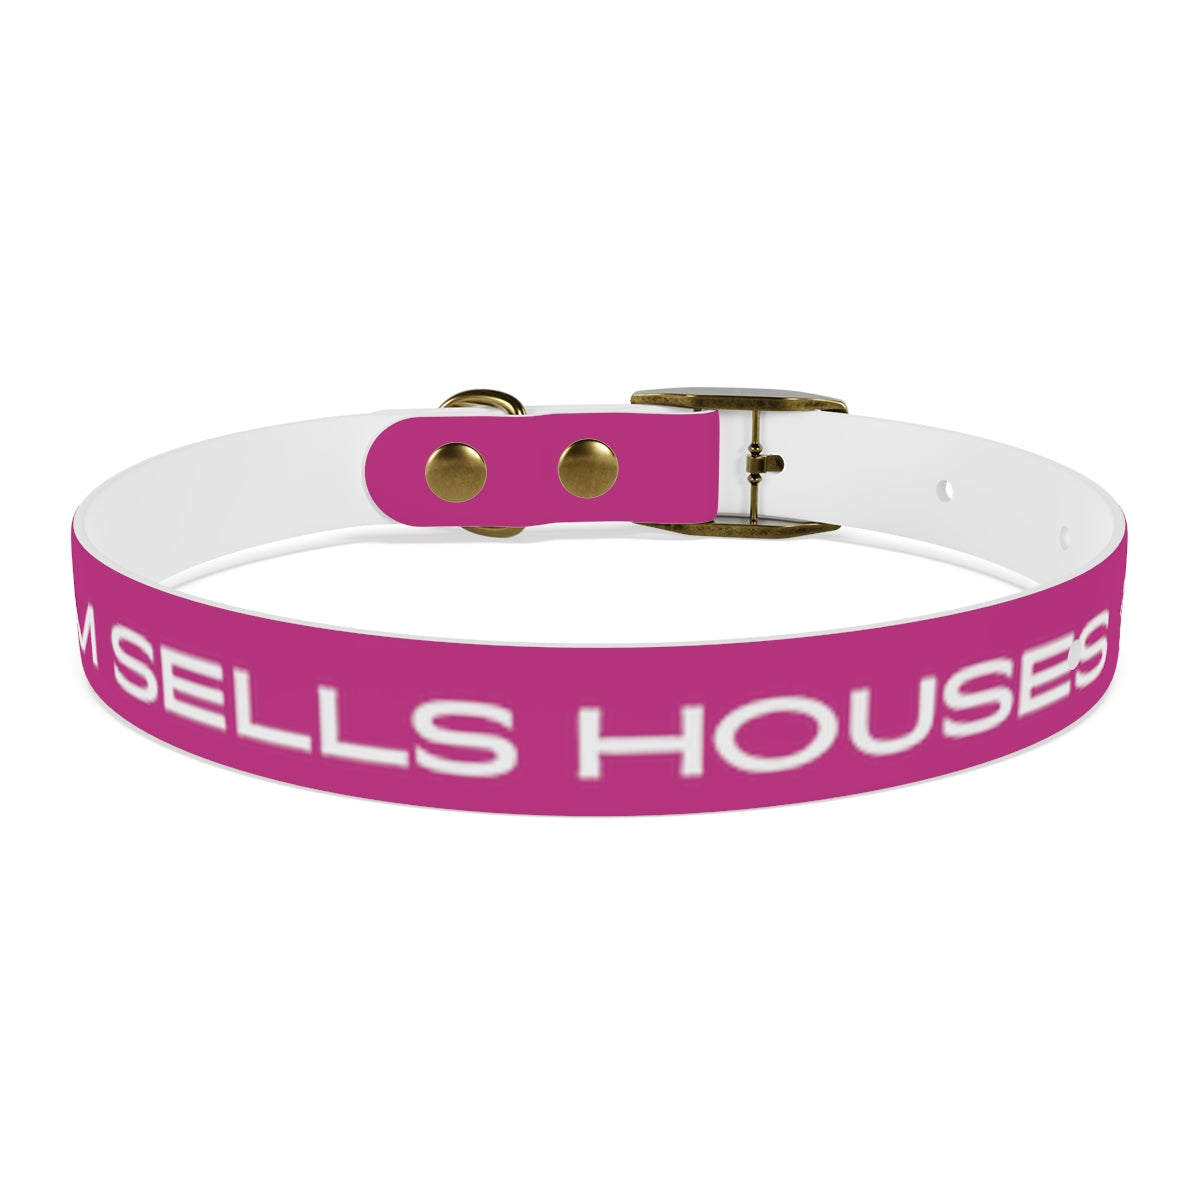 Dog Collar - My Mom Sells Houses - Pink